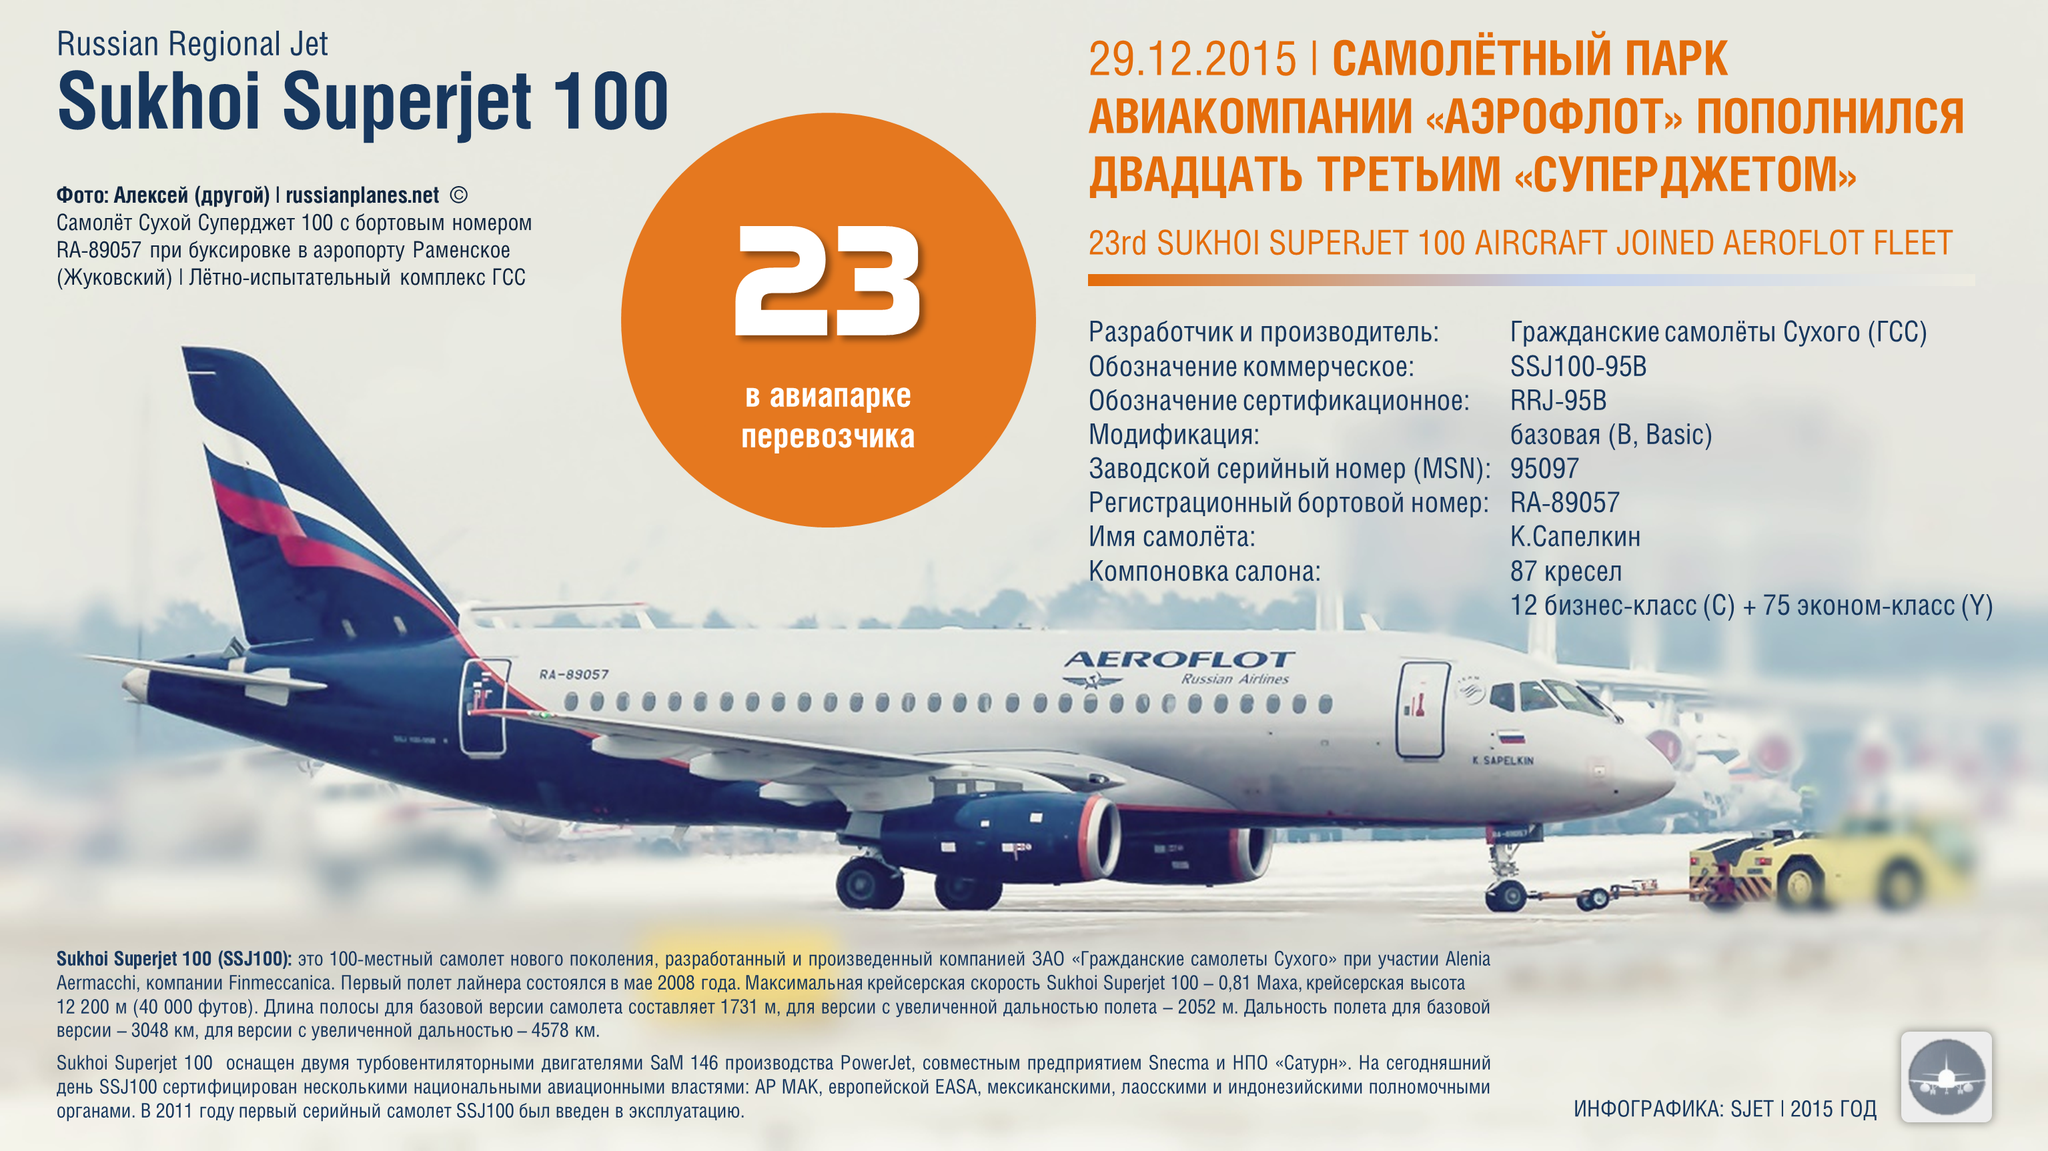 Самолет сухой суперджет 100 95 (sukhoi superjet): схема салона, технические характеристики, фото